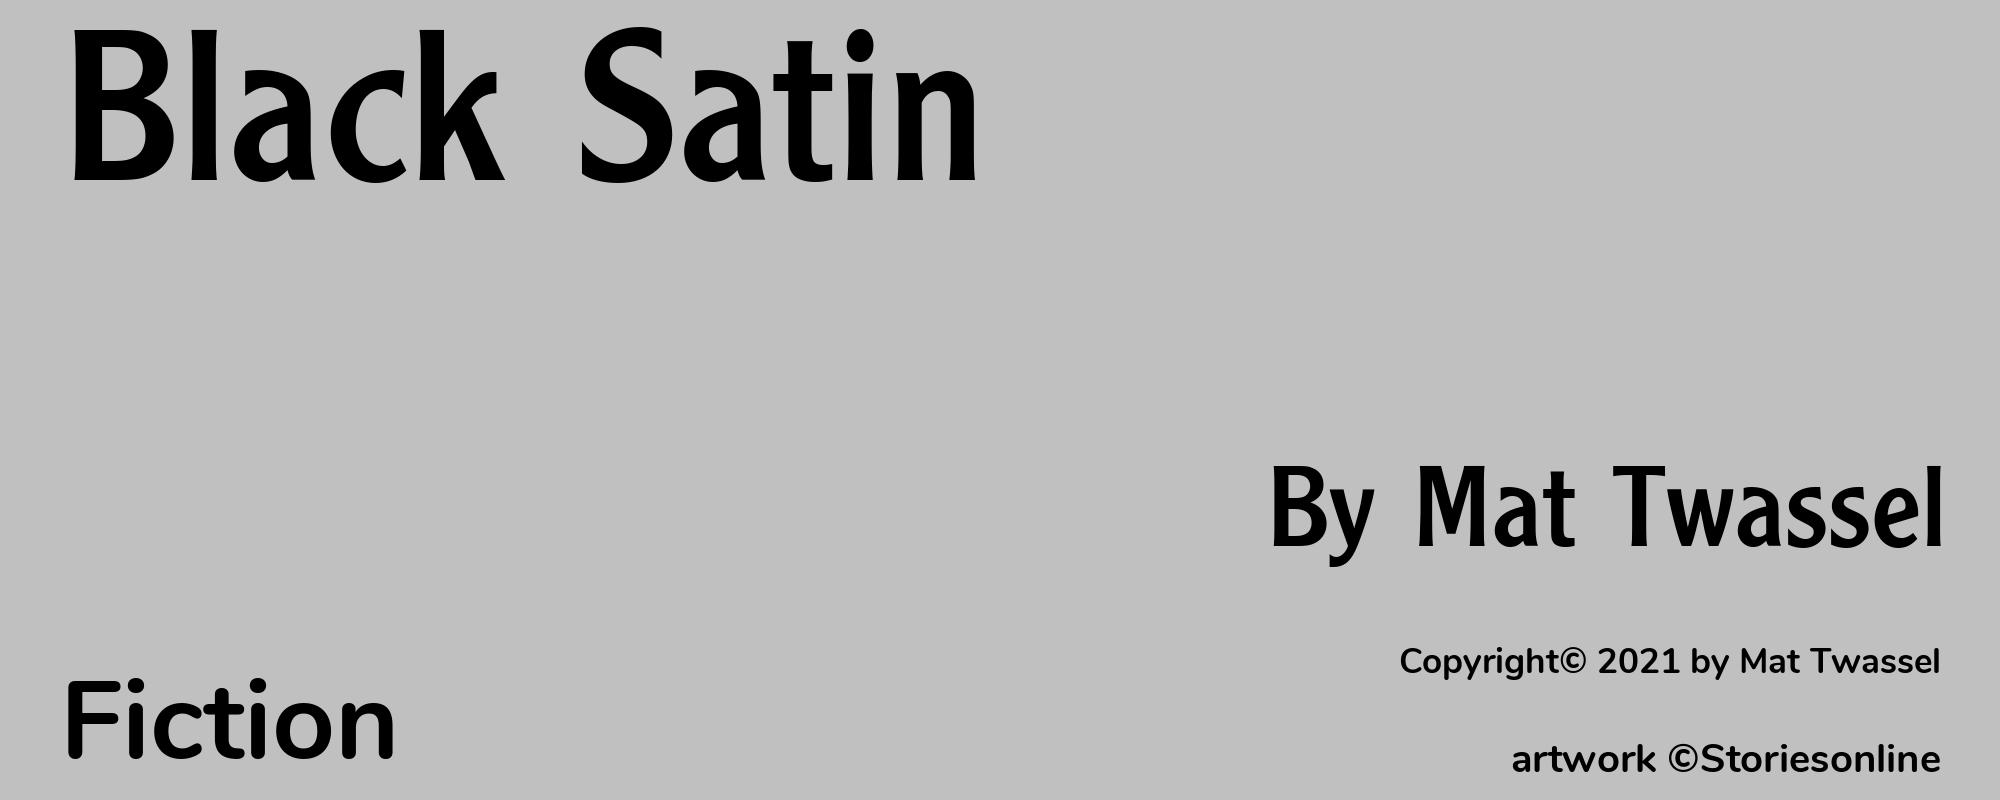 Black Satin - Cover